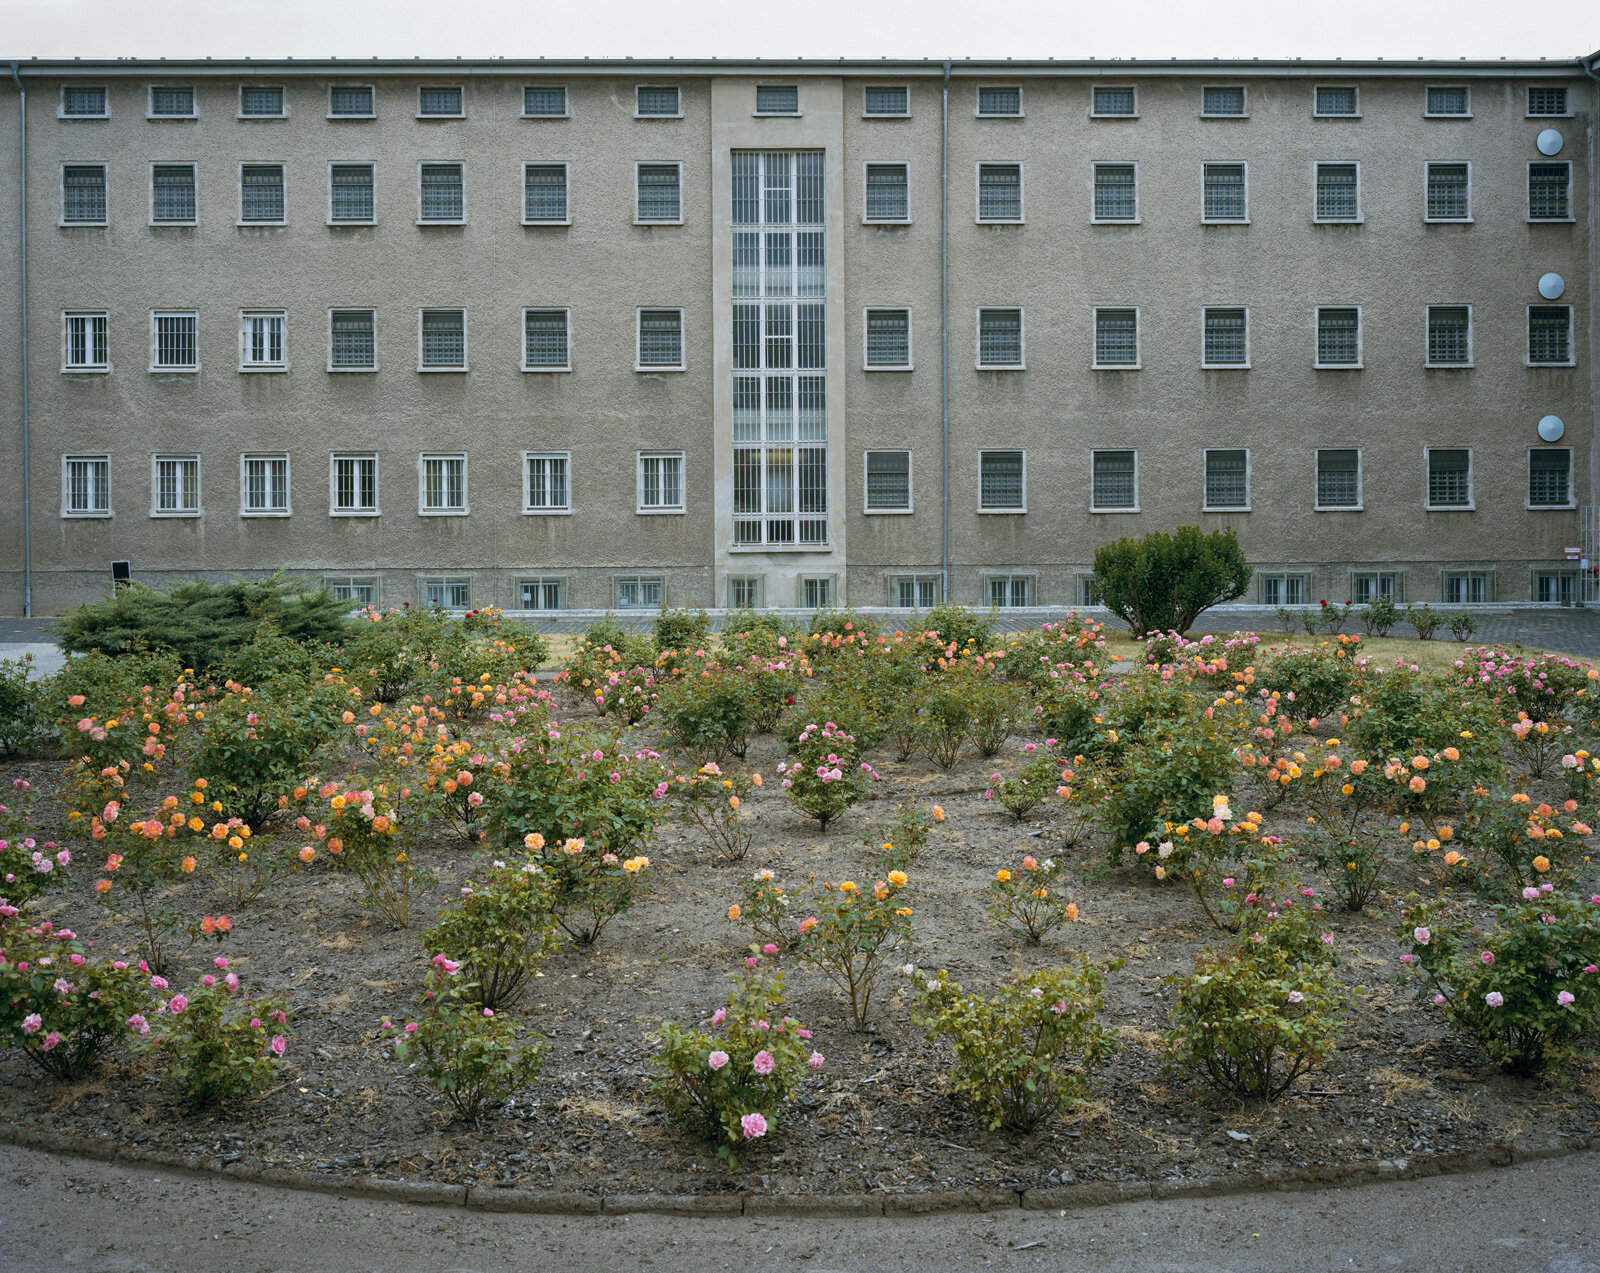  Stasi Prison, Berlin 2008 